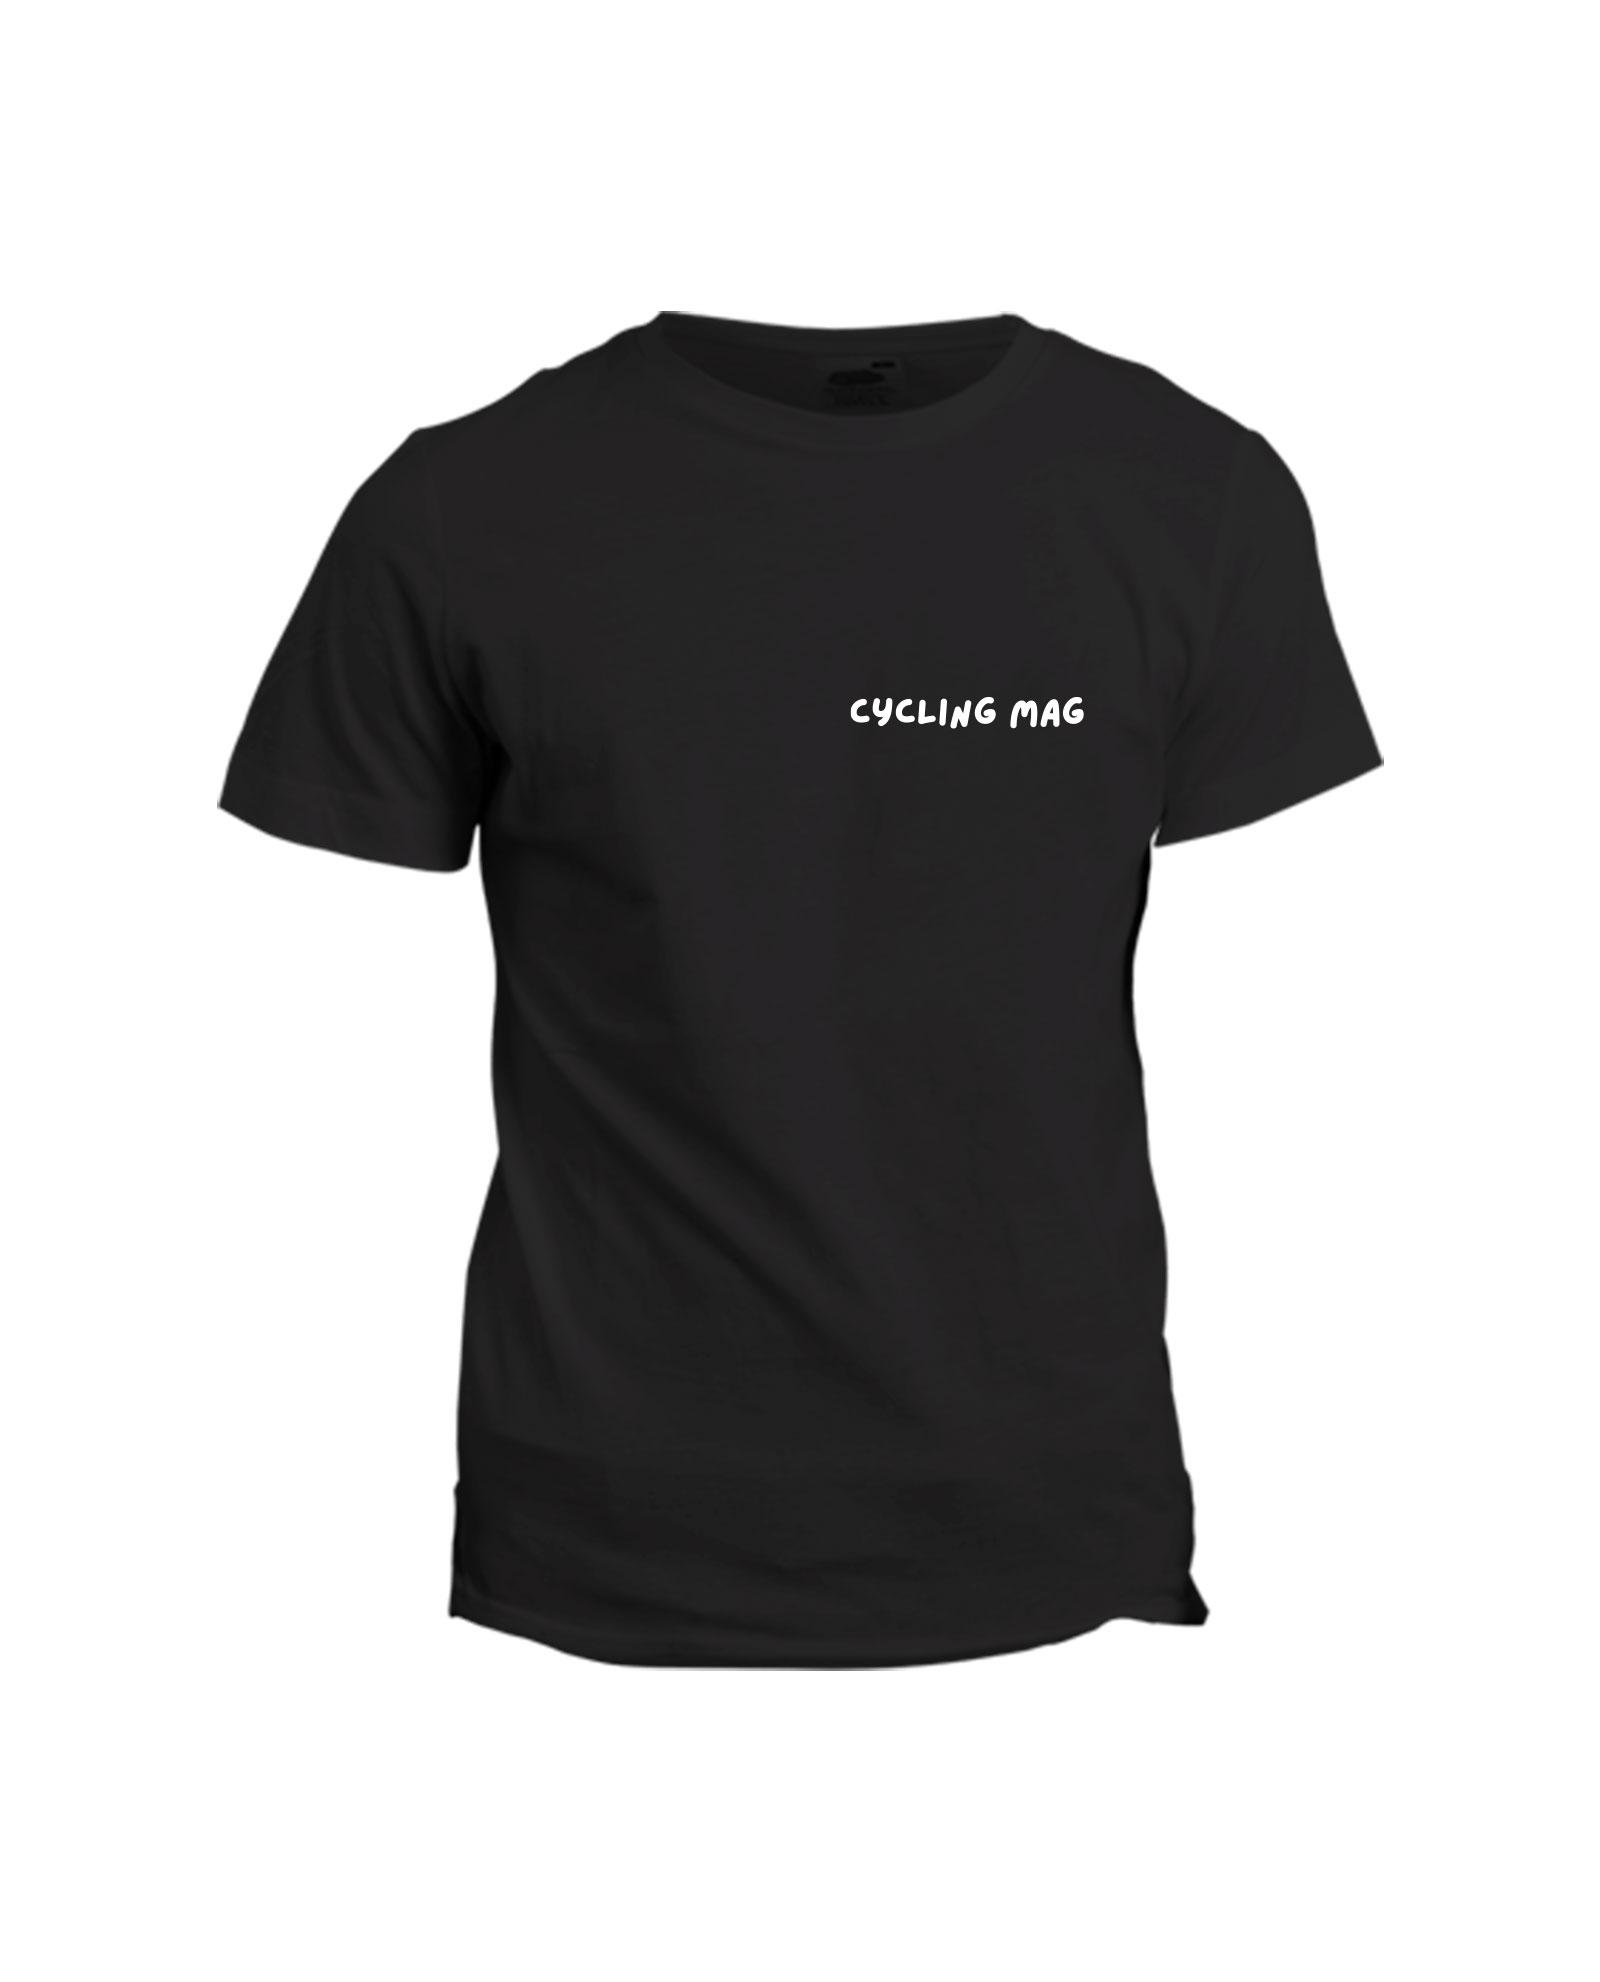 la-ligne-shop-t-shirt-noir-cycling-mag